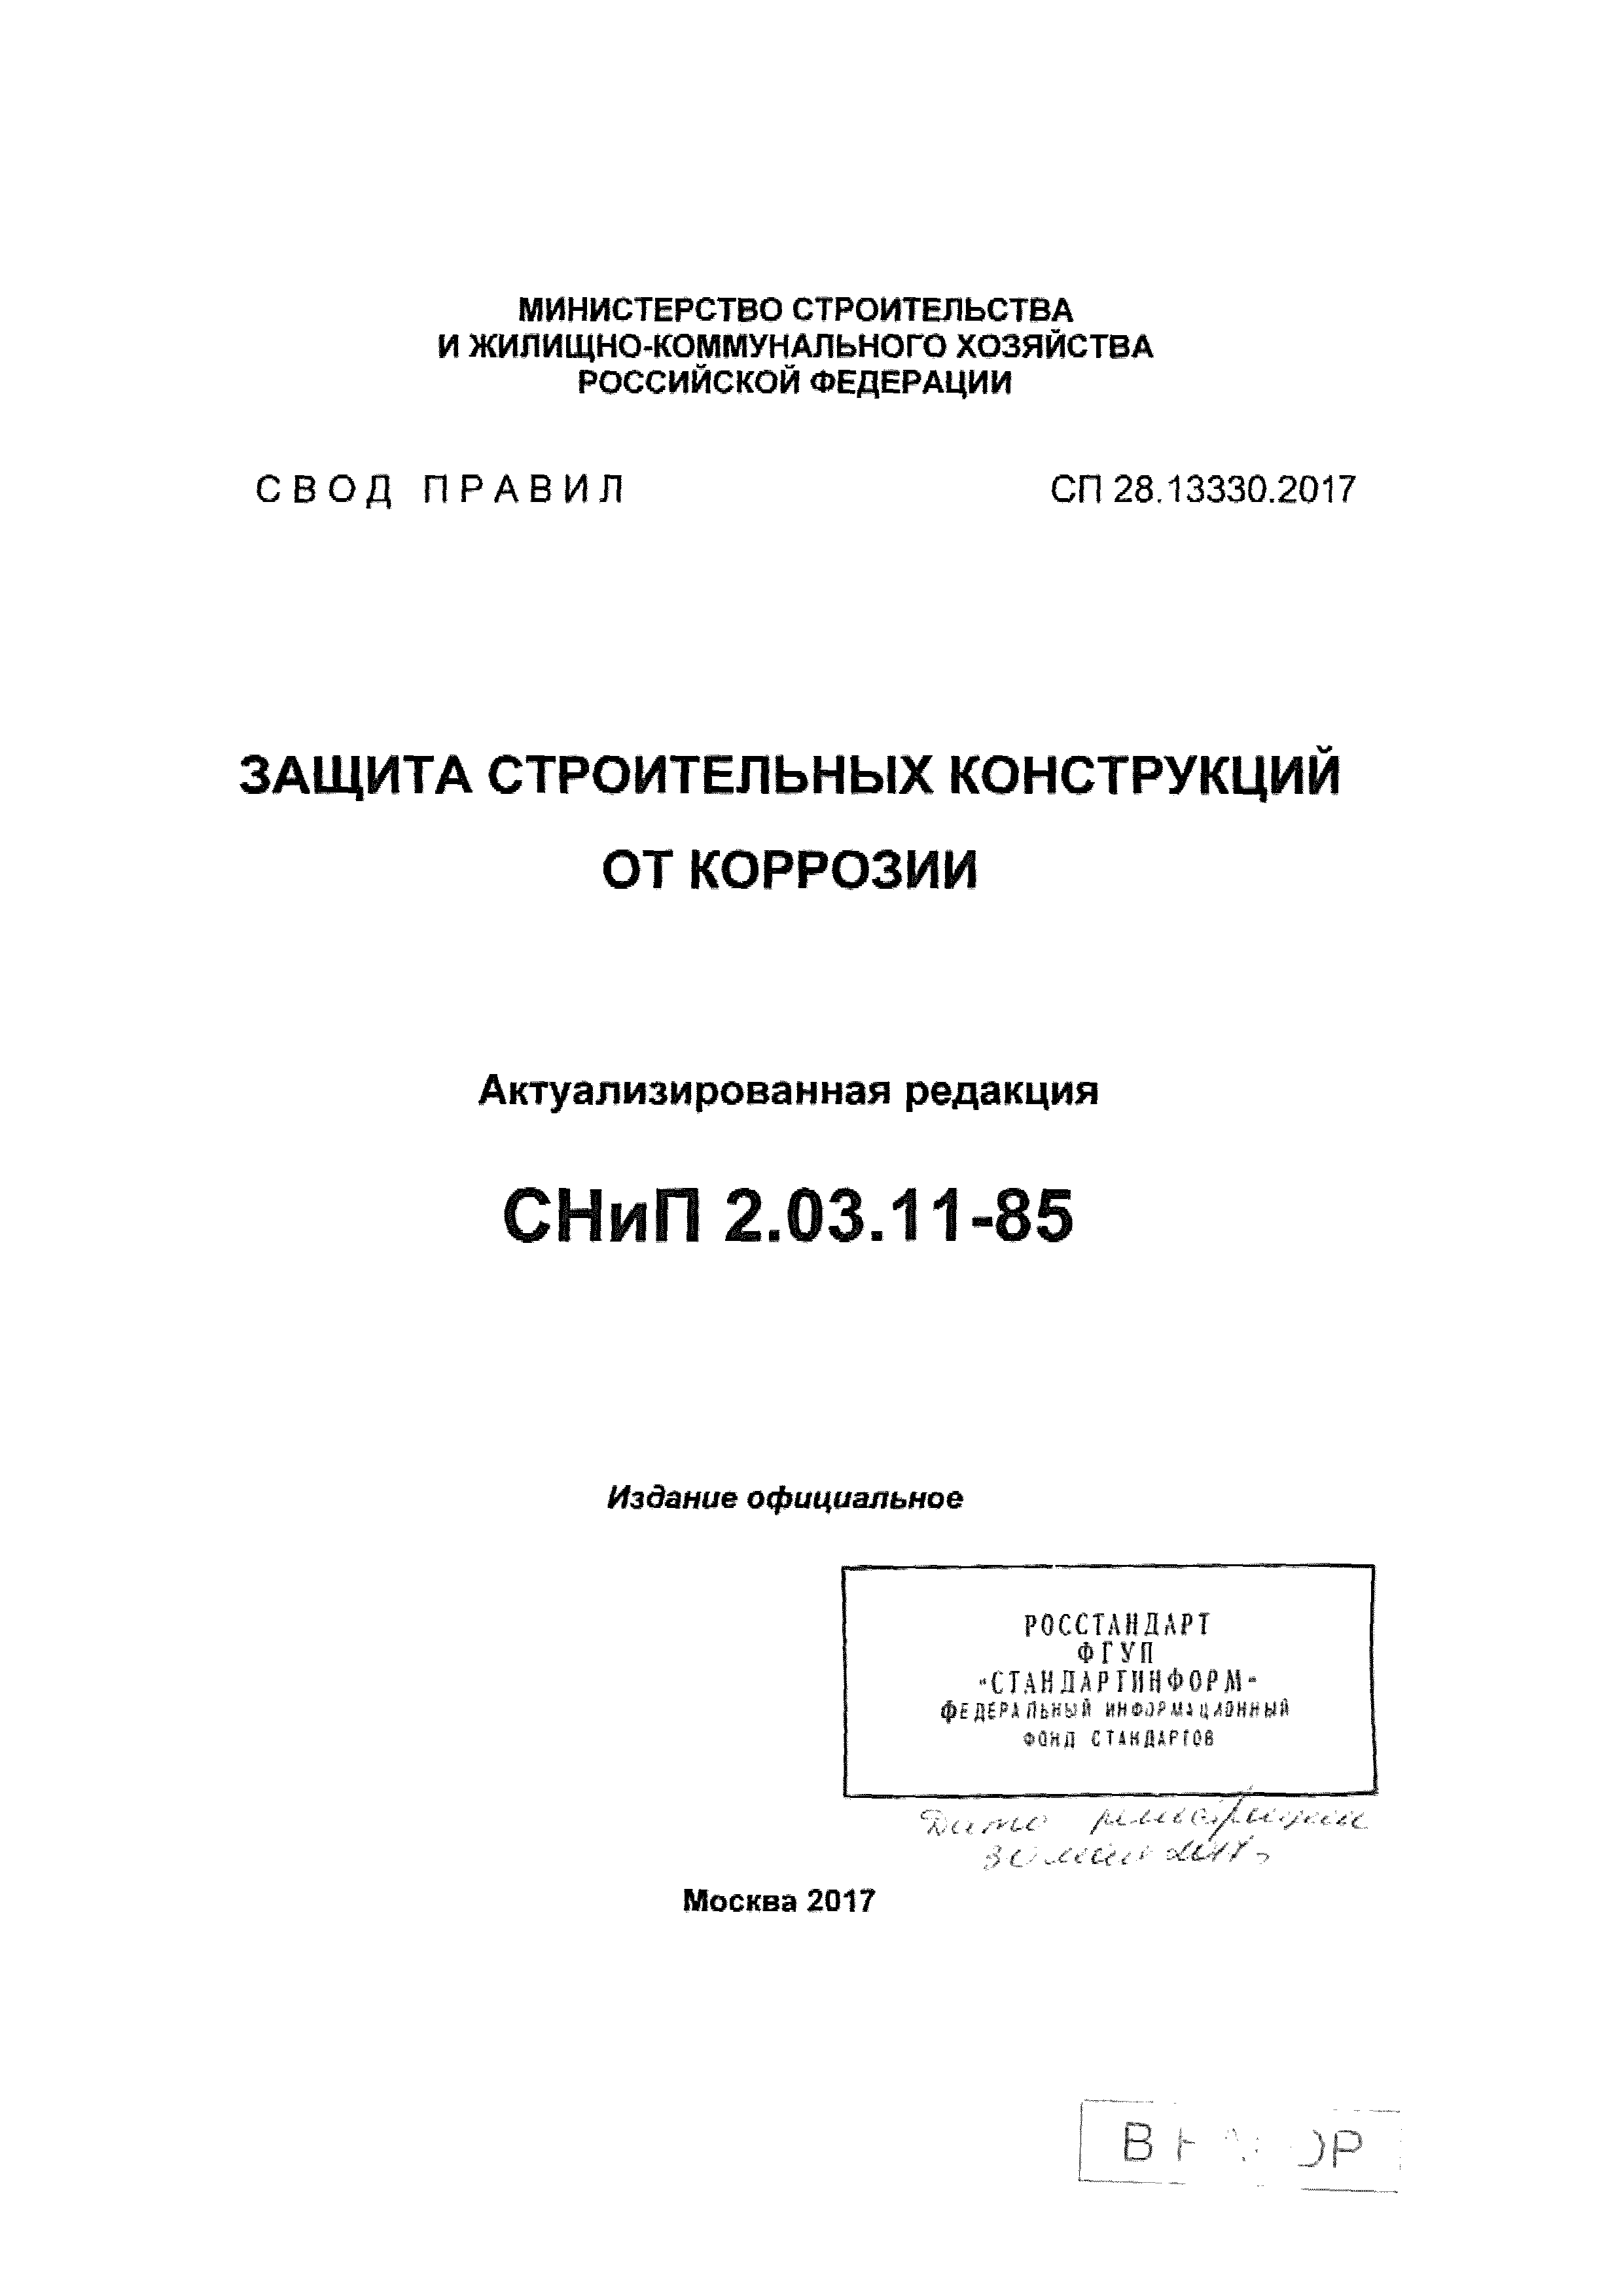 СП 28.13330.2017